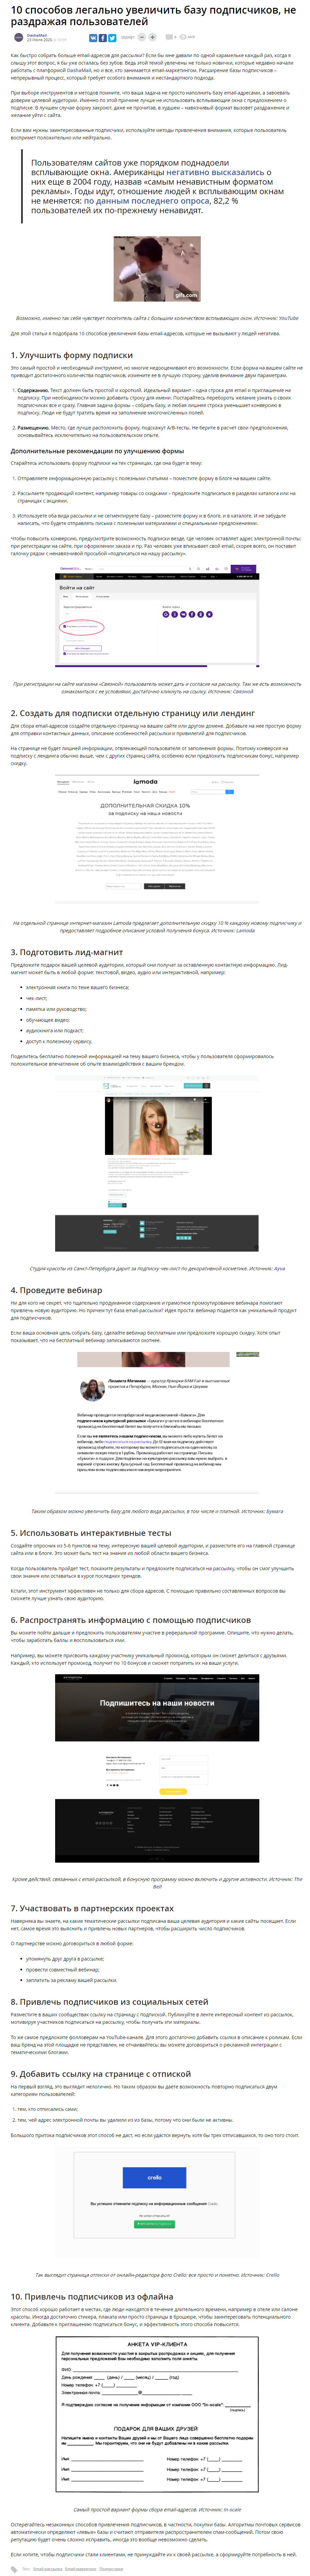 Пример статьи маркетинговой тематики для SeoNews.ru